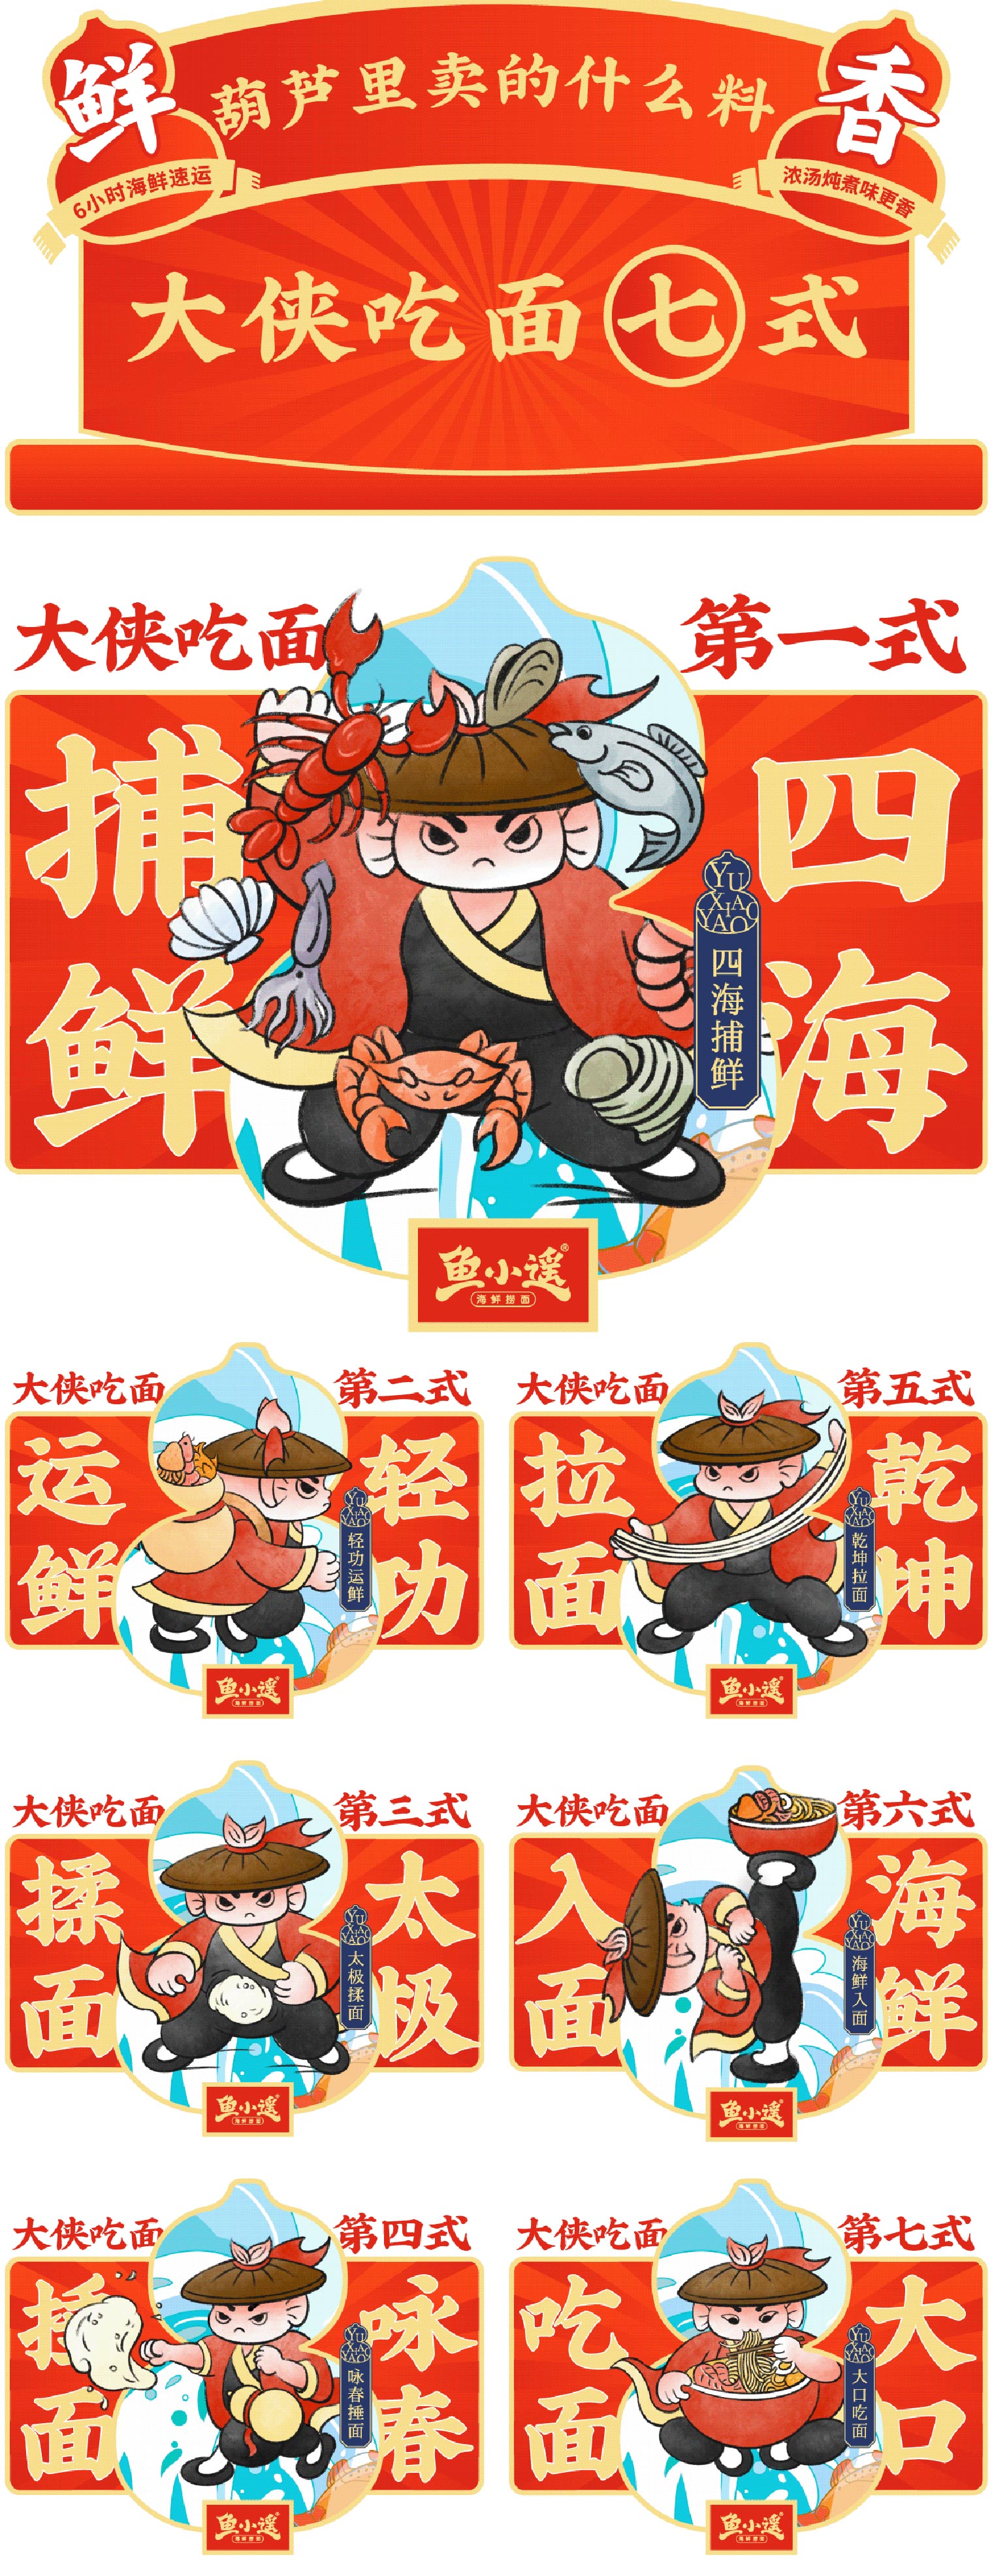 【渔逍遥】餐饮火锅捞面IP形象设计卡通表情包吉祥物设计